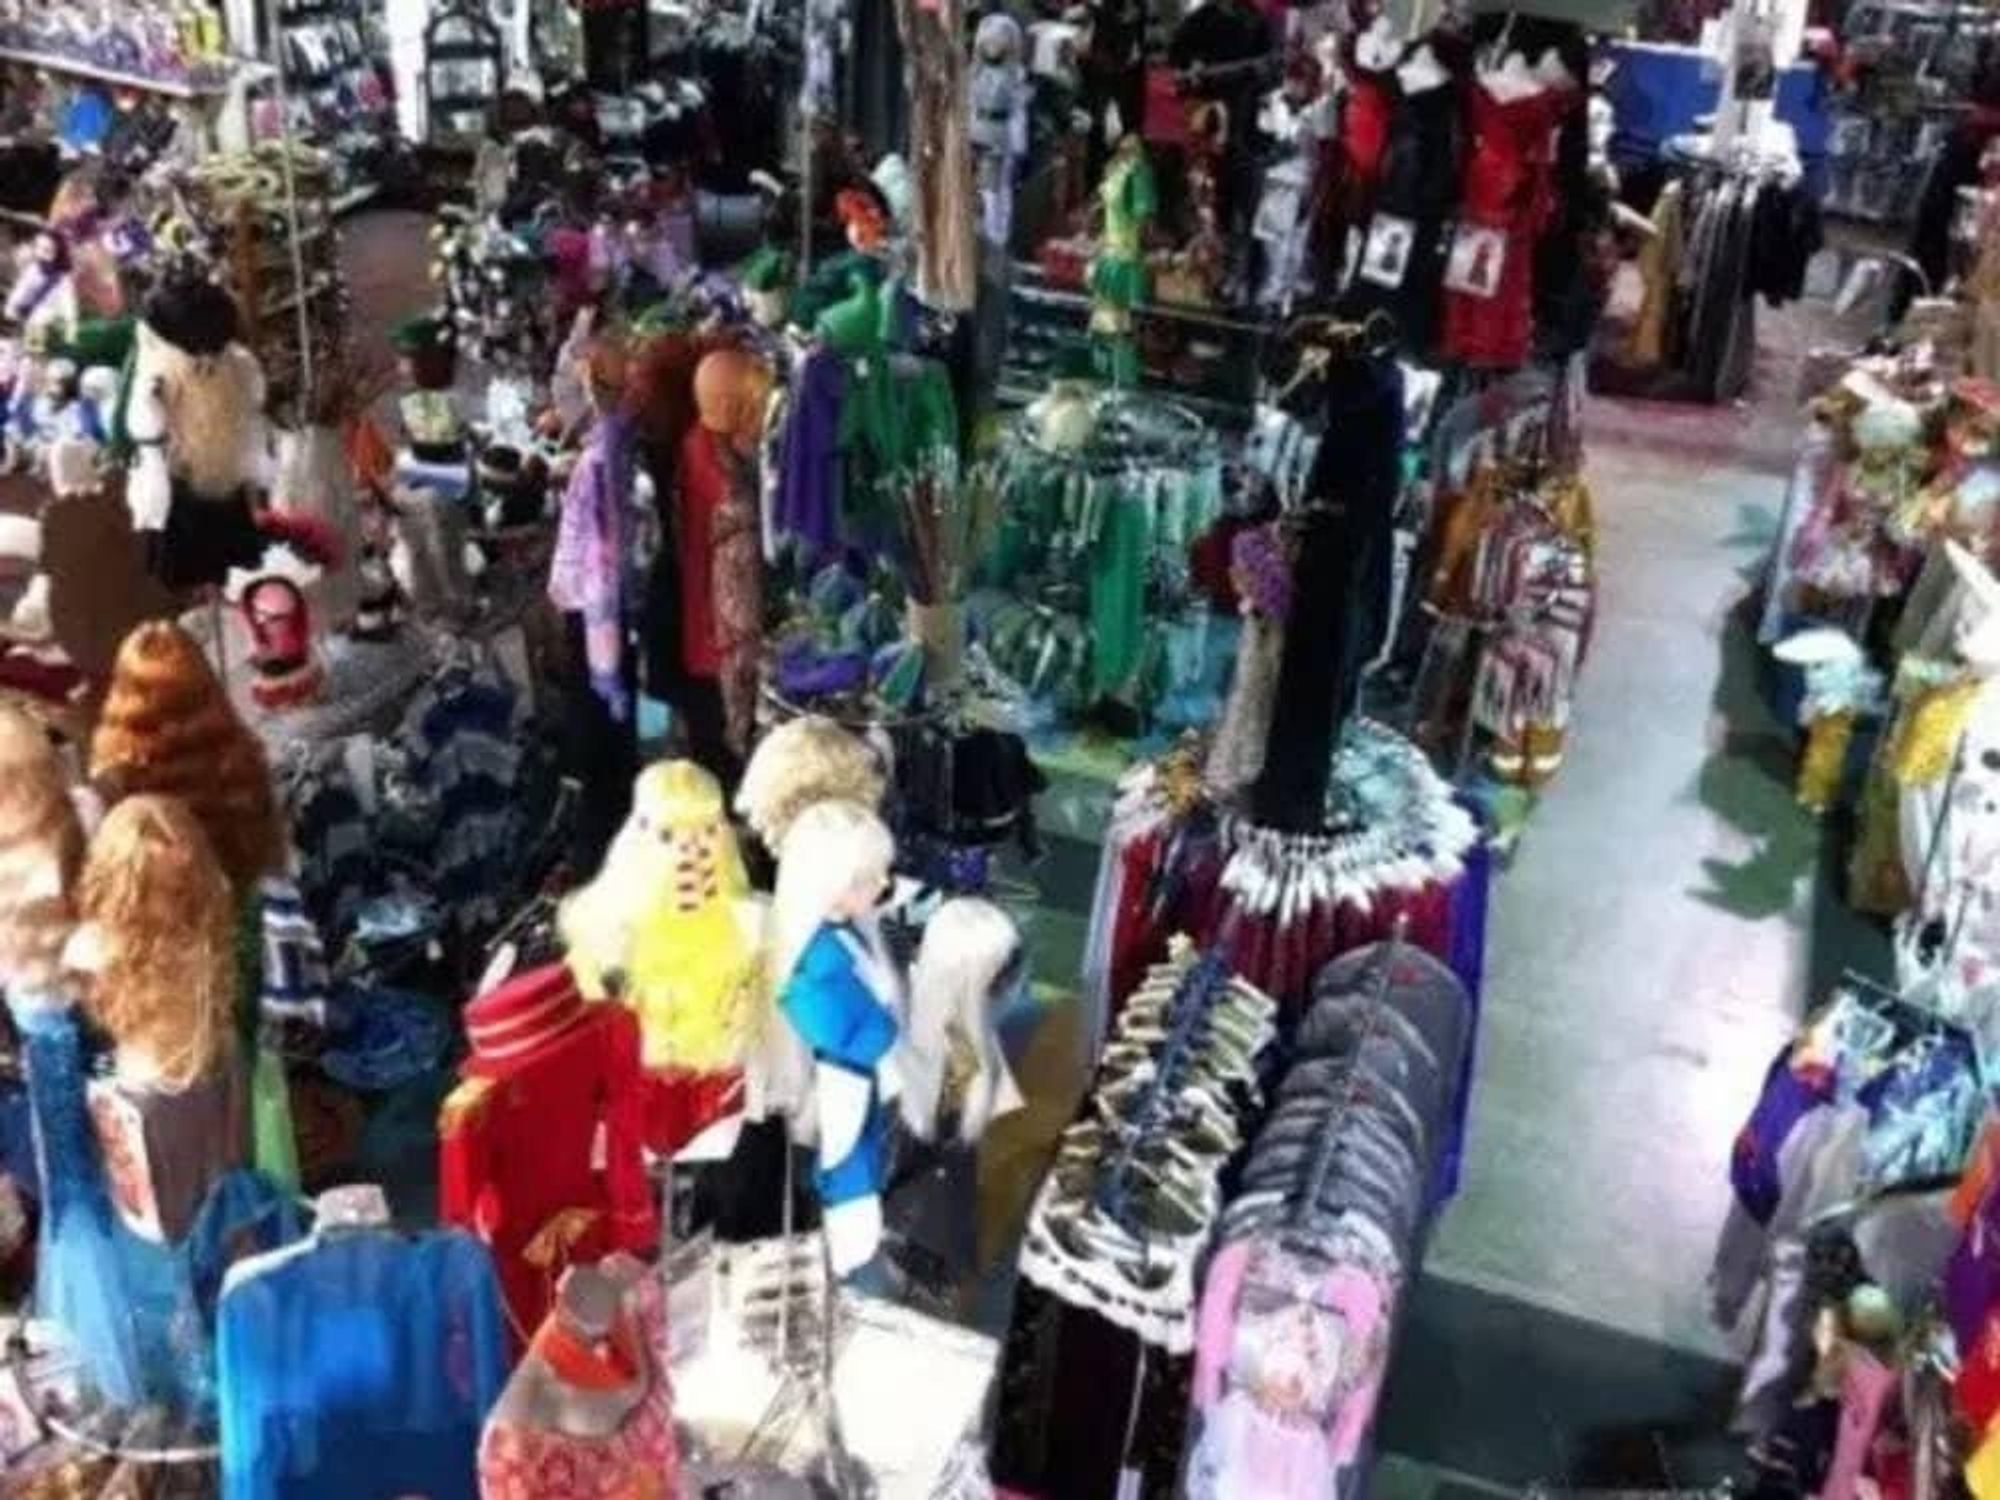 Frankel's Costume Shop